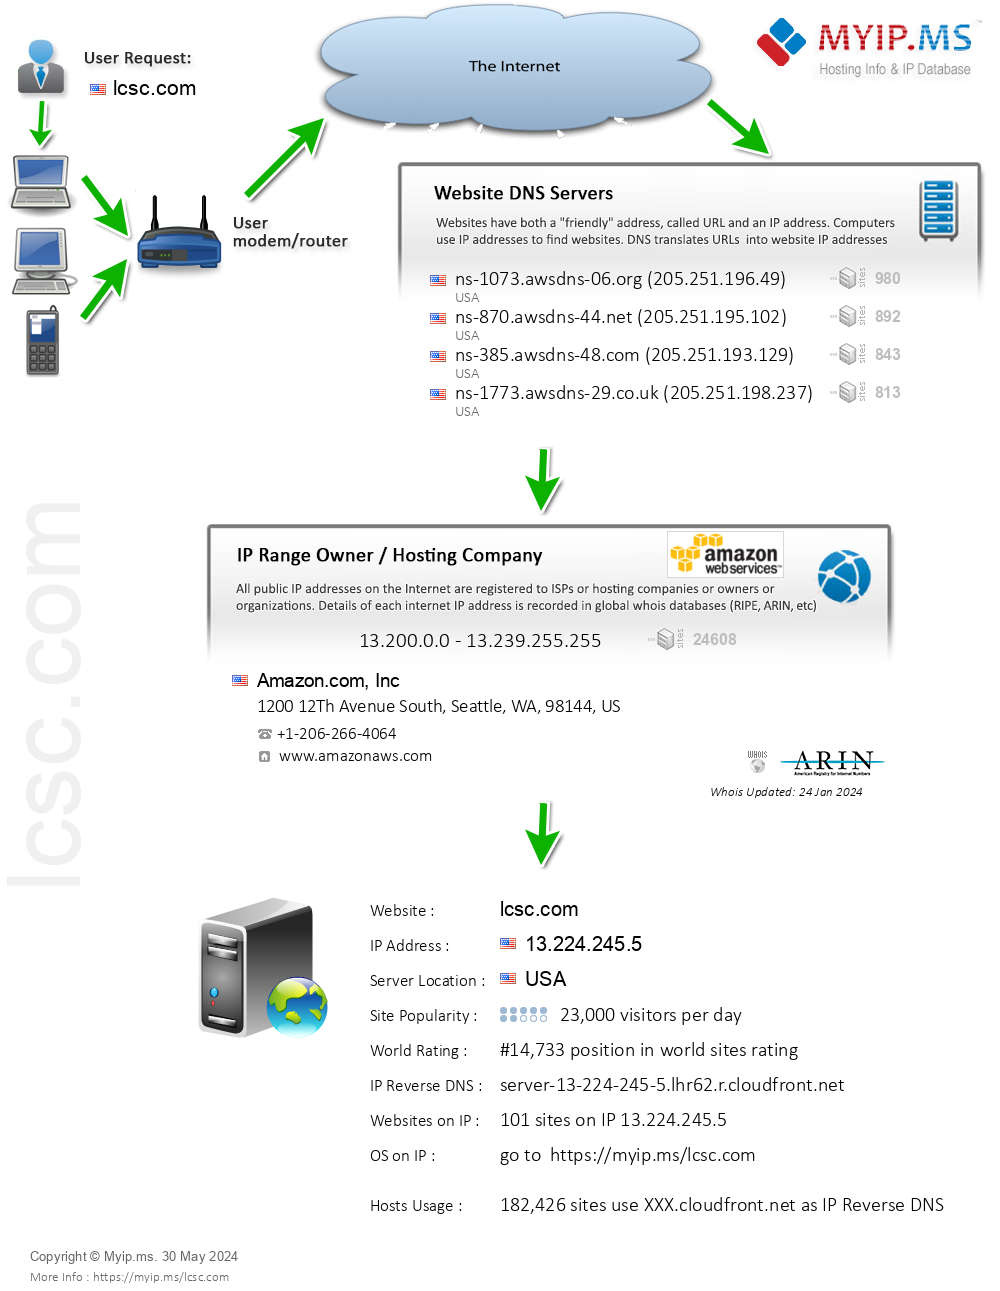 Lcsc.com - Website Hosting Visual IP Diagram